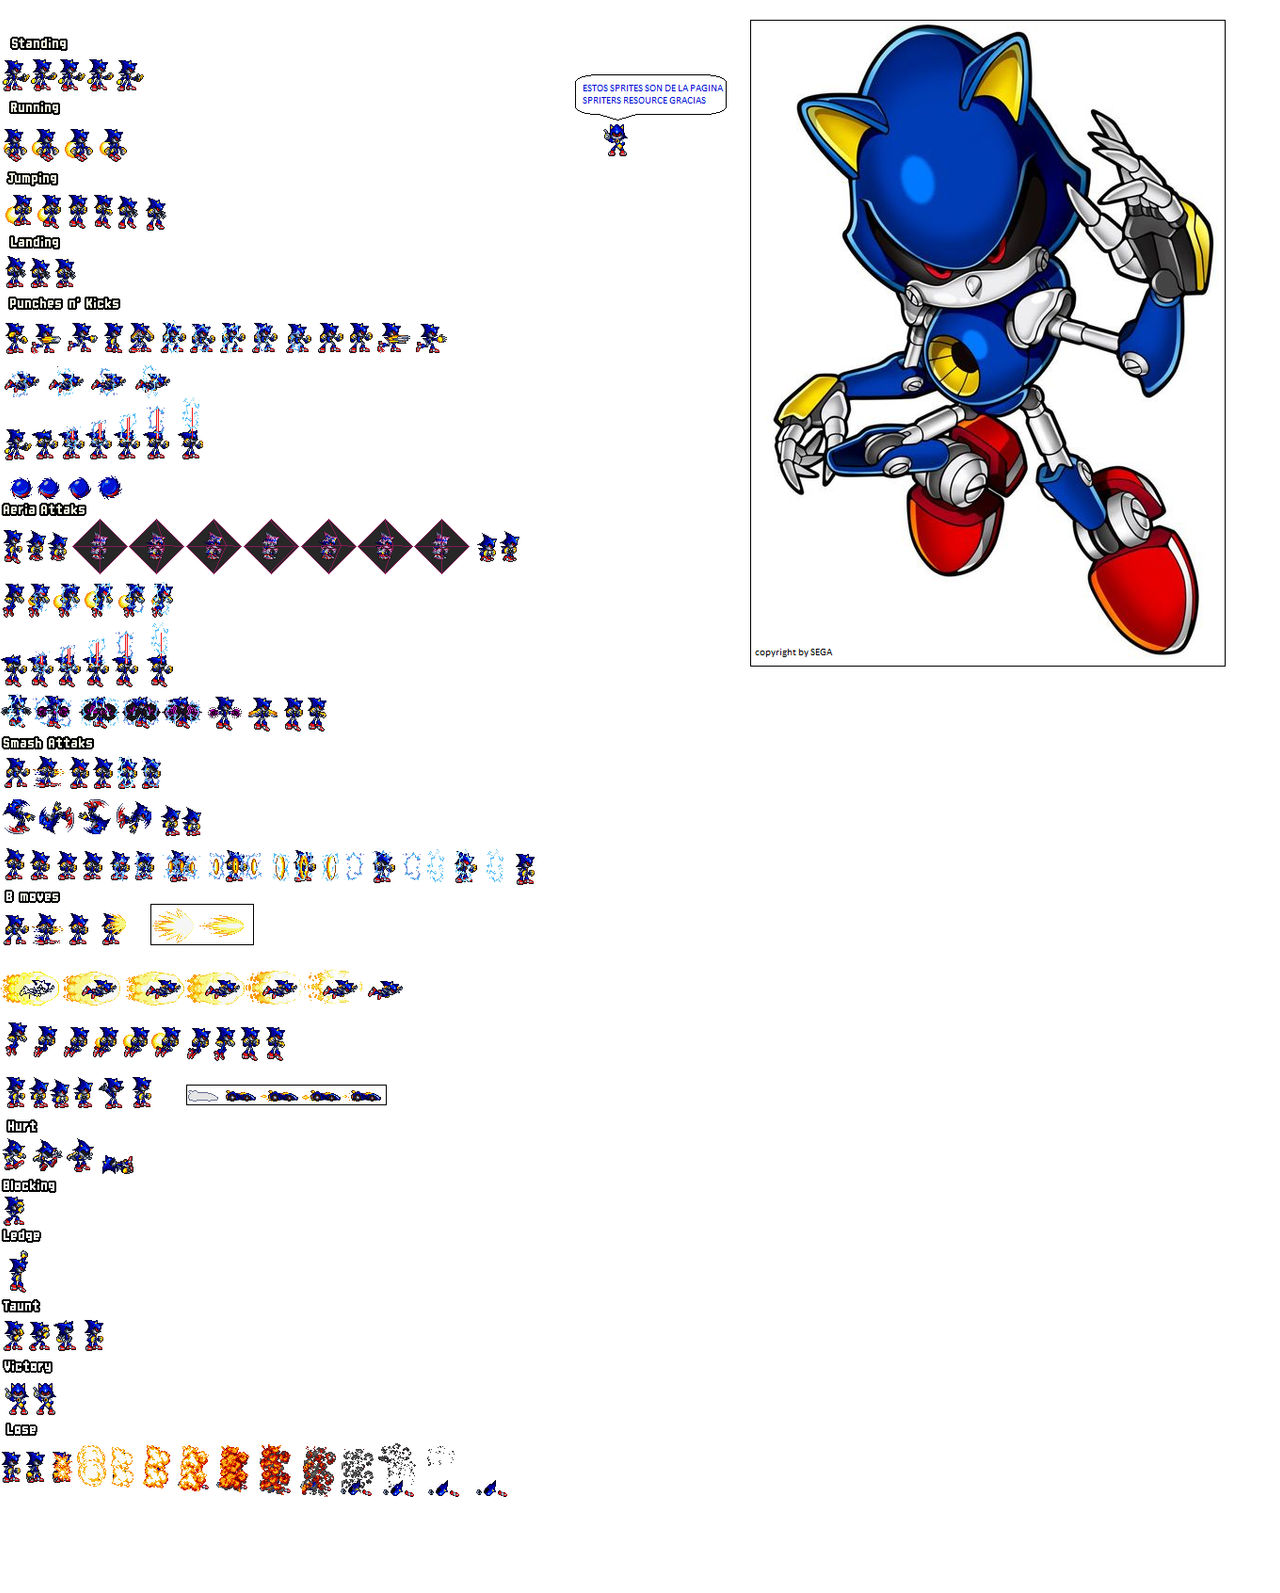 Metal Sonic Sprite Sheet by nicogamer337 on DeviantArt